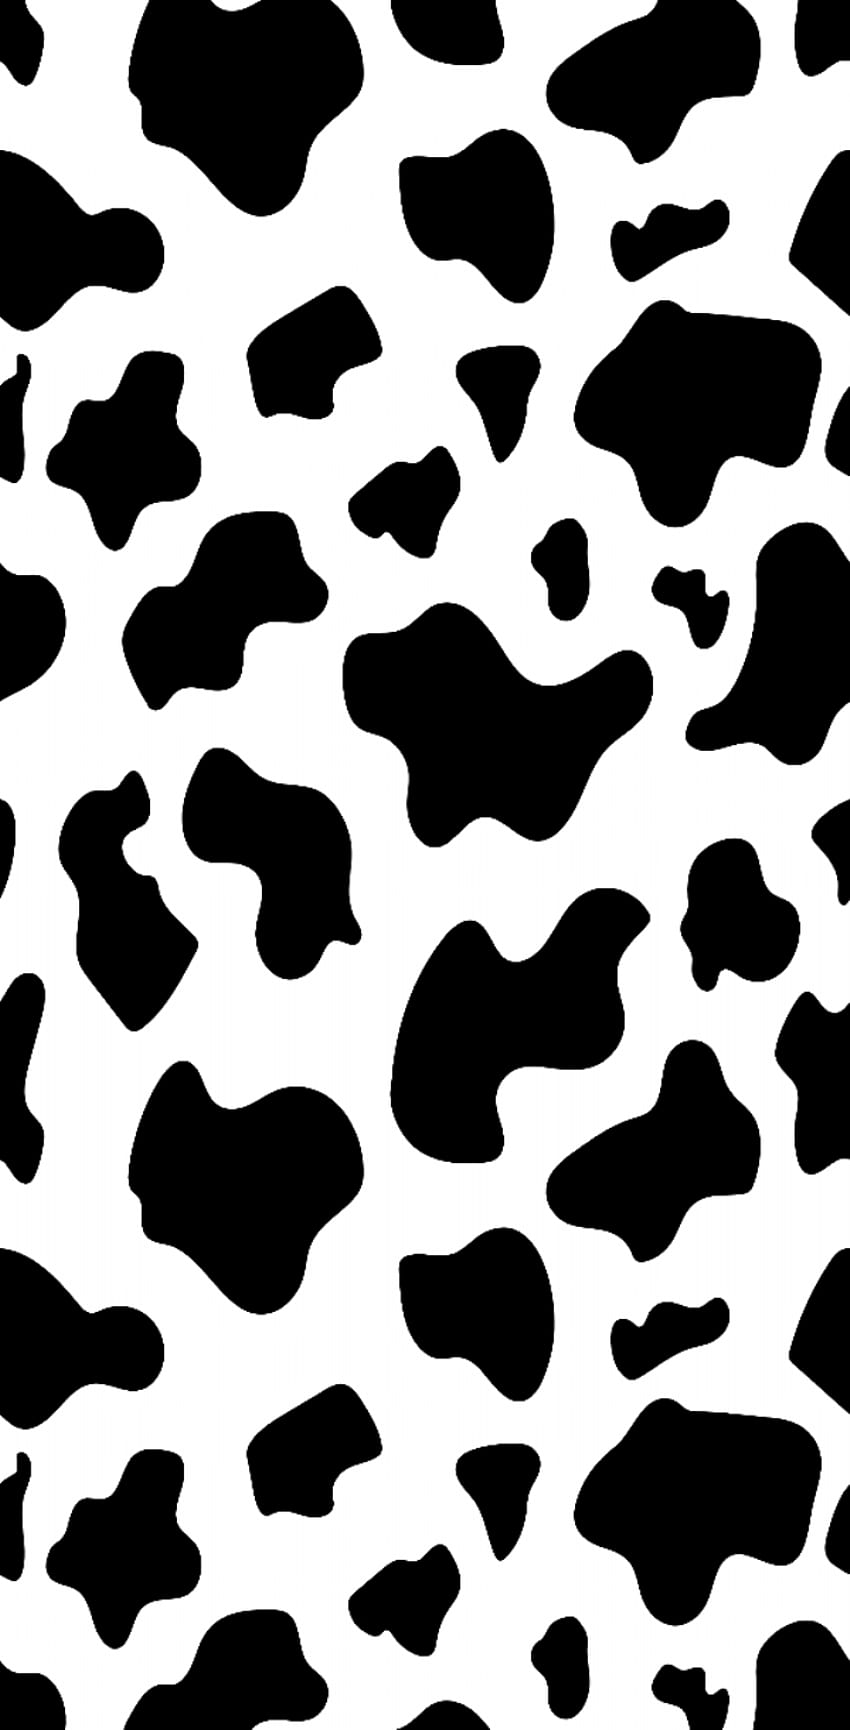 Cow print wallpaper  Cow print wallpaper Cow wallpaper Cute simple  wallpapers